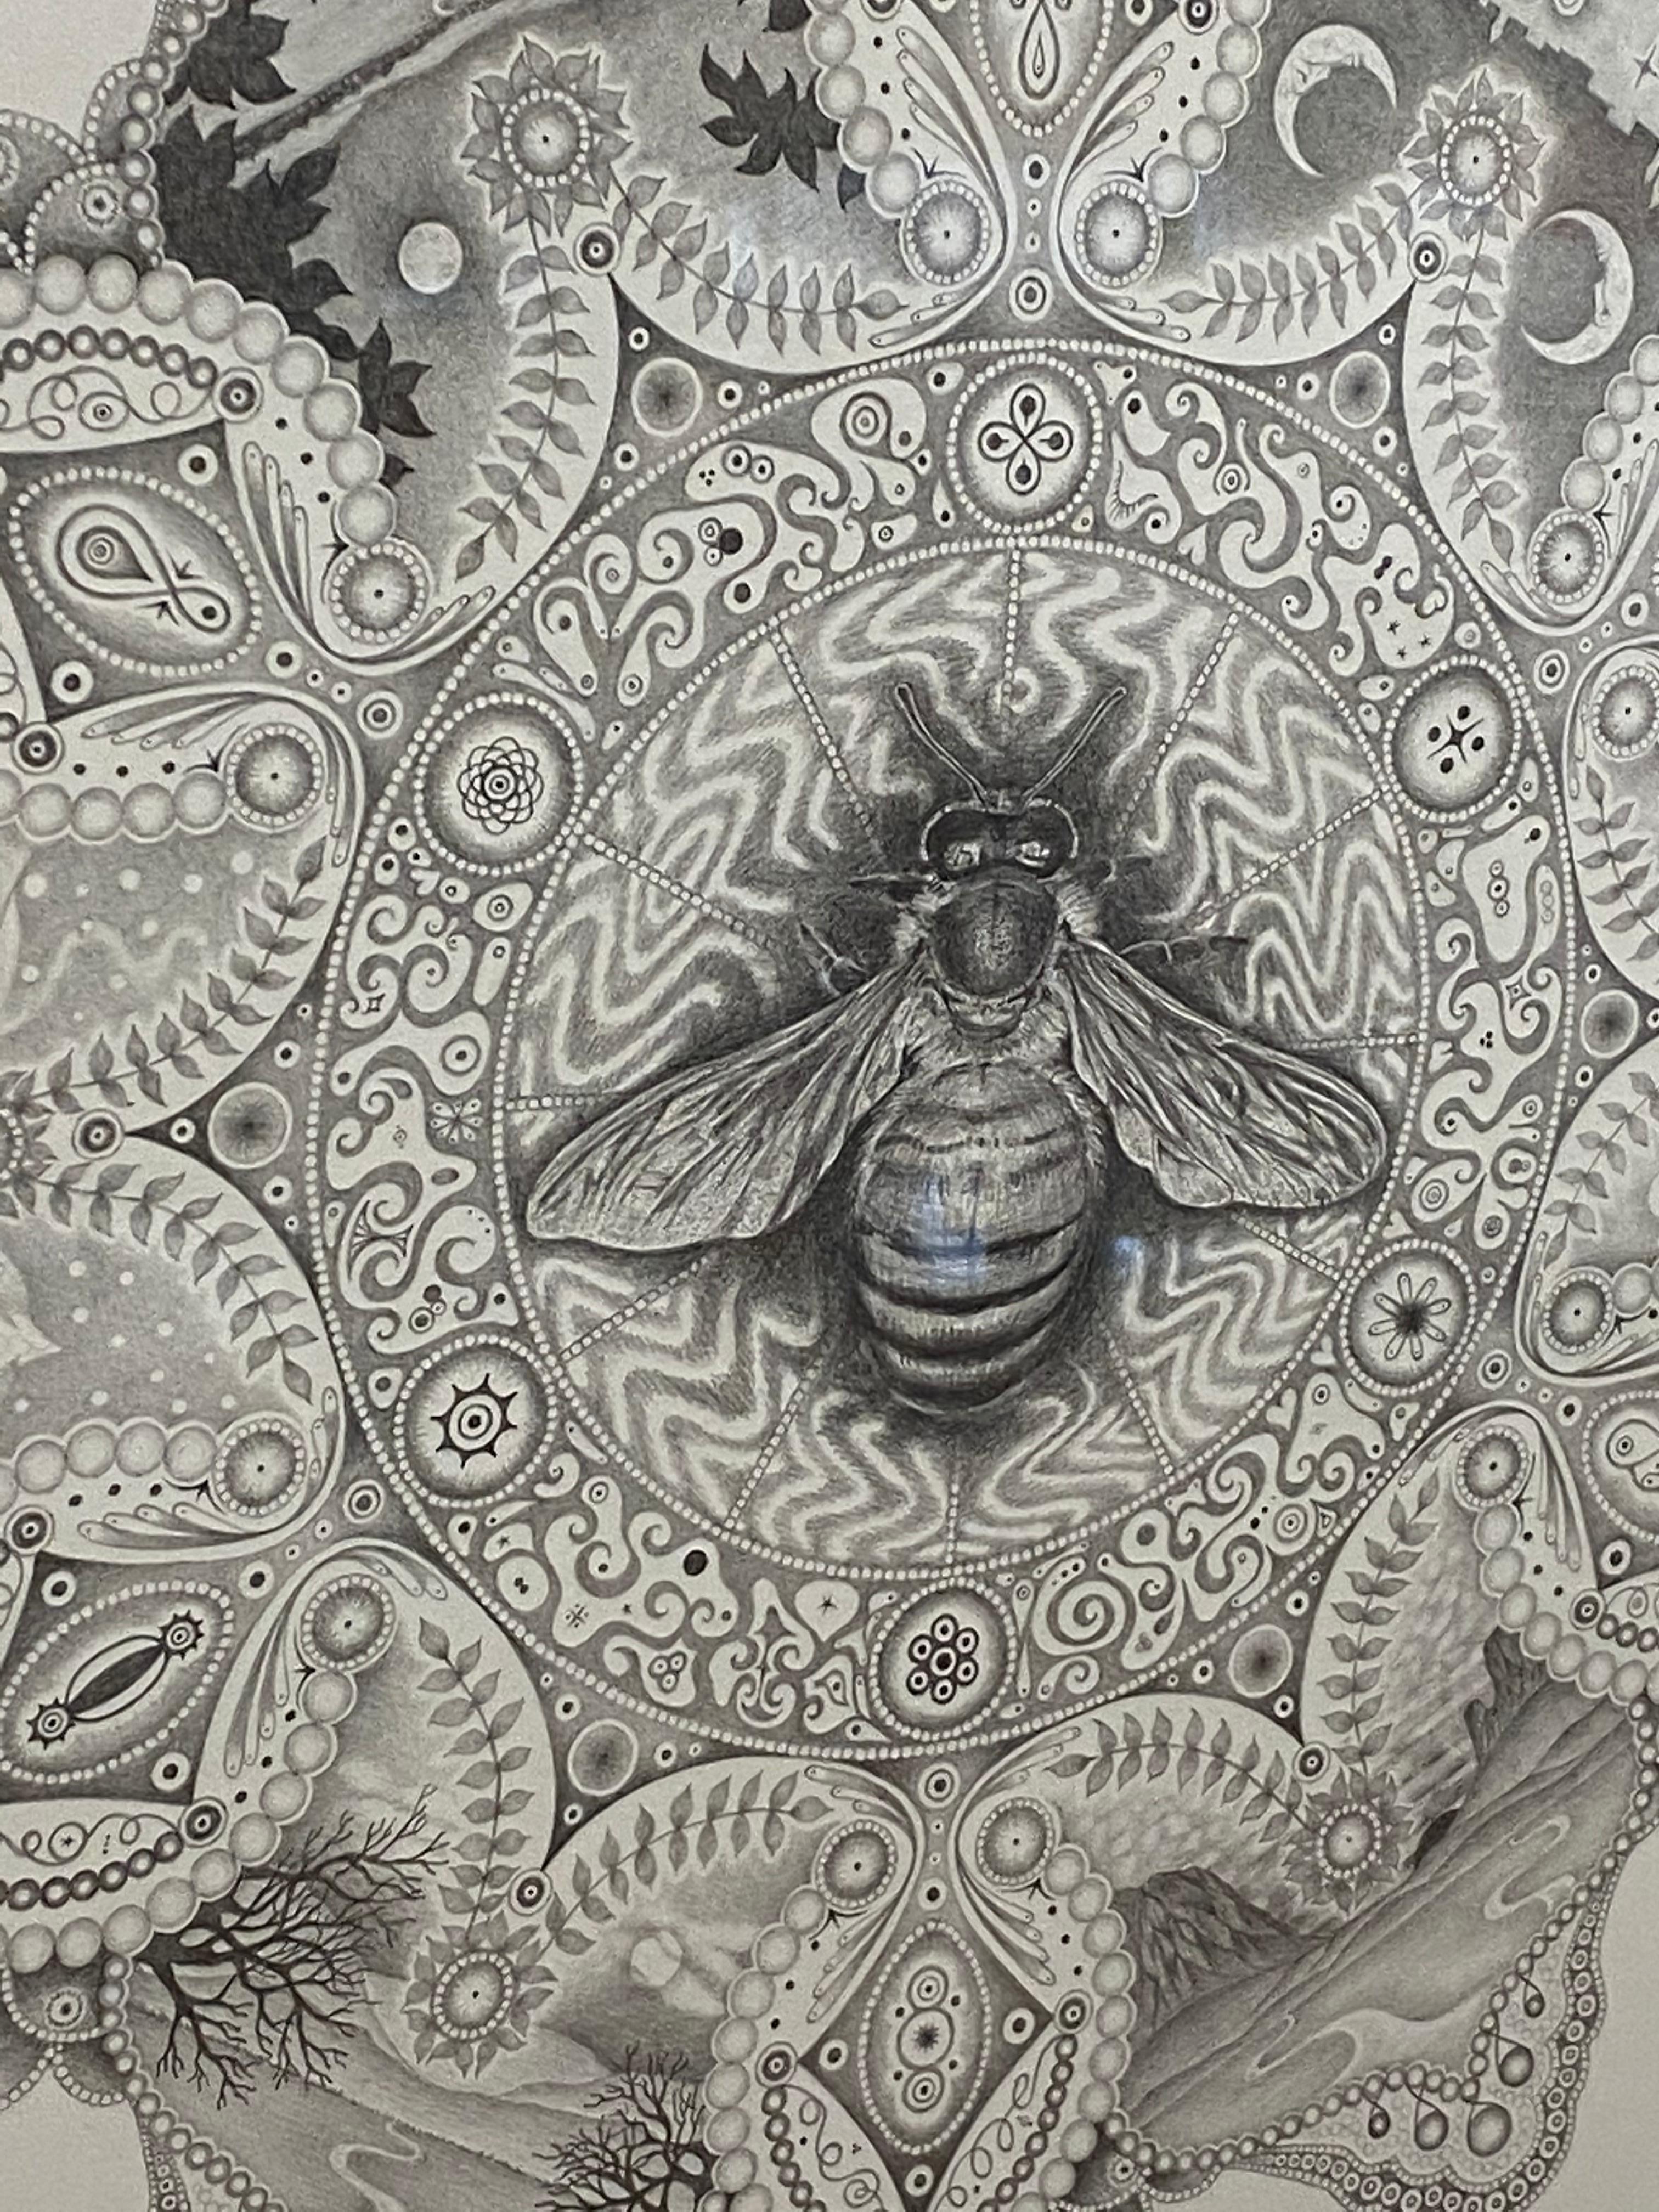 Snowflakes 99 Pollinator, Mandala Pencil Drawing, Bee, Insect, Landscape, Trees - Gray Abstract Drawing by Michiyo Ihara